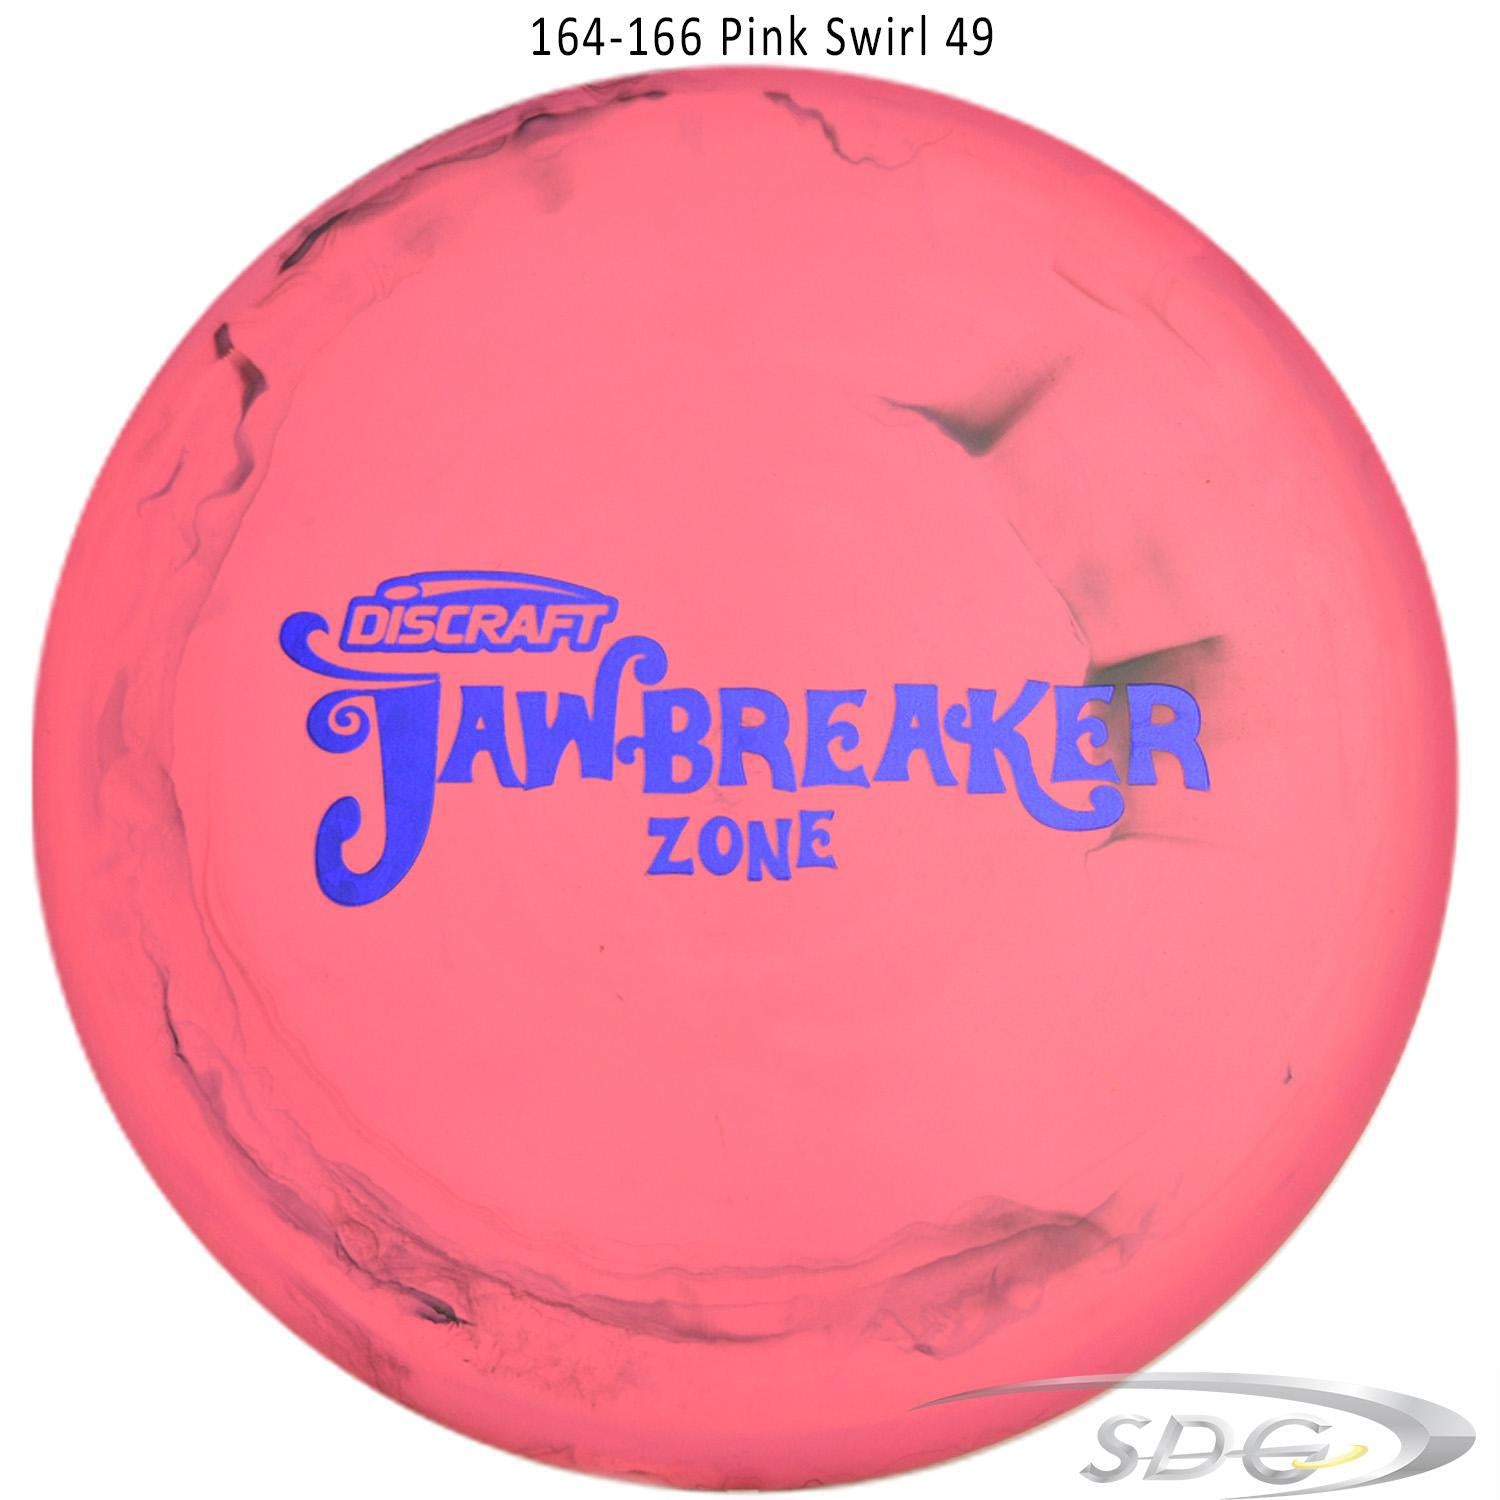 discraft-jawbreaker-zone-disc-golf-putter-169-160-weights 164-166 Pink Swirl 49 